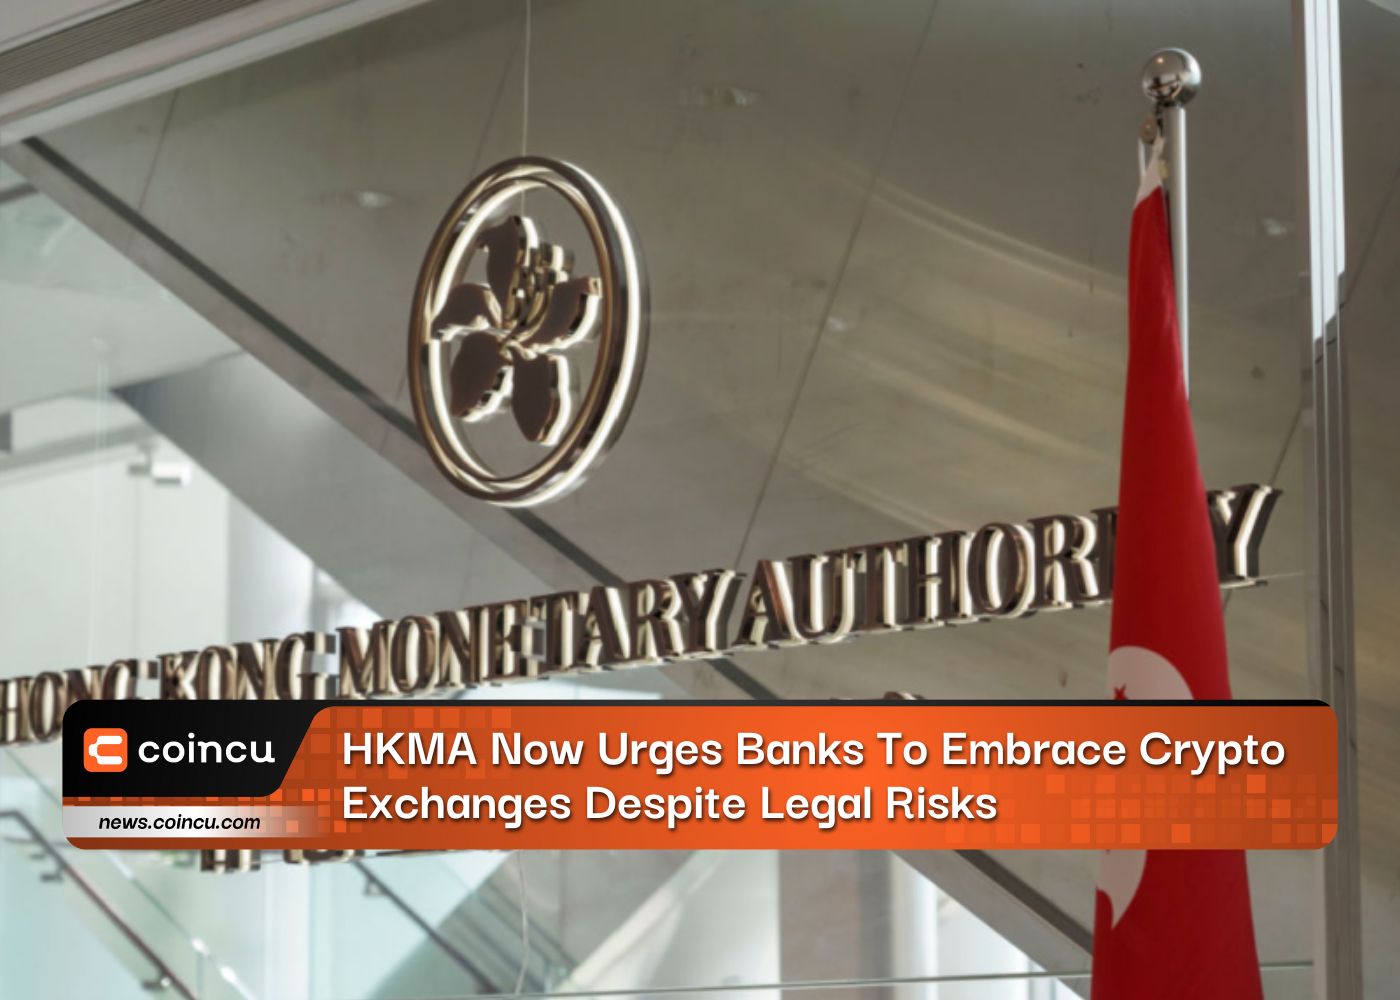 एचकेएमए अब बैंकों से कानूनी जोखिमों के बावजूद क्रिप्टो एक्सचेंजों को अपनाने का आग्रह करता है